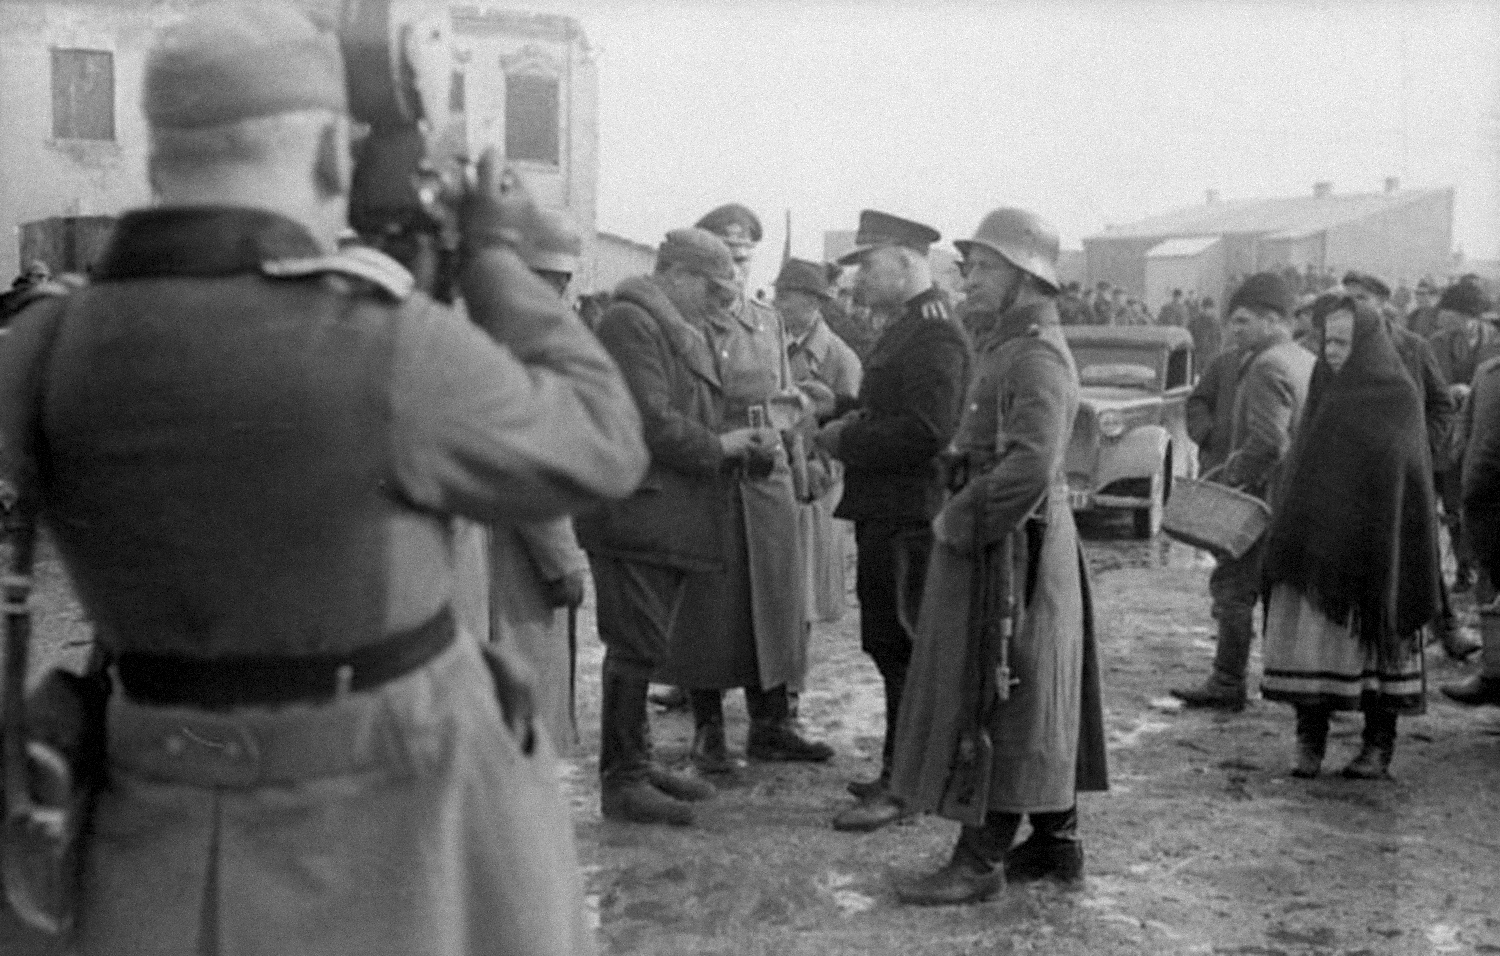 Kontrola ludności przez niemiecki patrol filmowana przez kompanię propagandową, styczeń 1940. Fot. Bundesarchiv/Wikimedia Commons